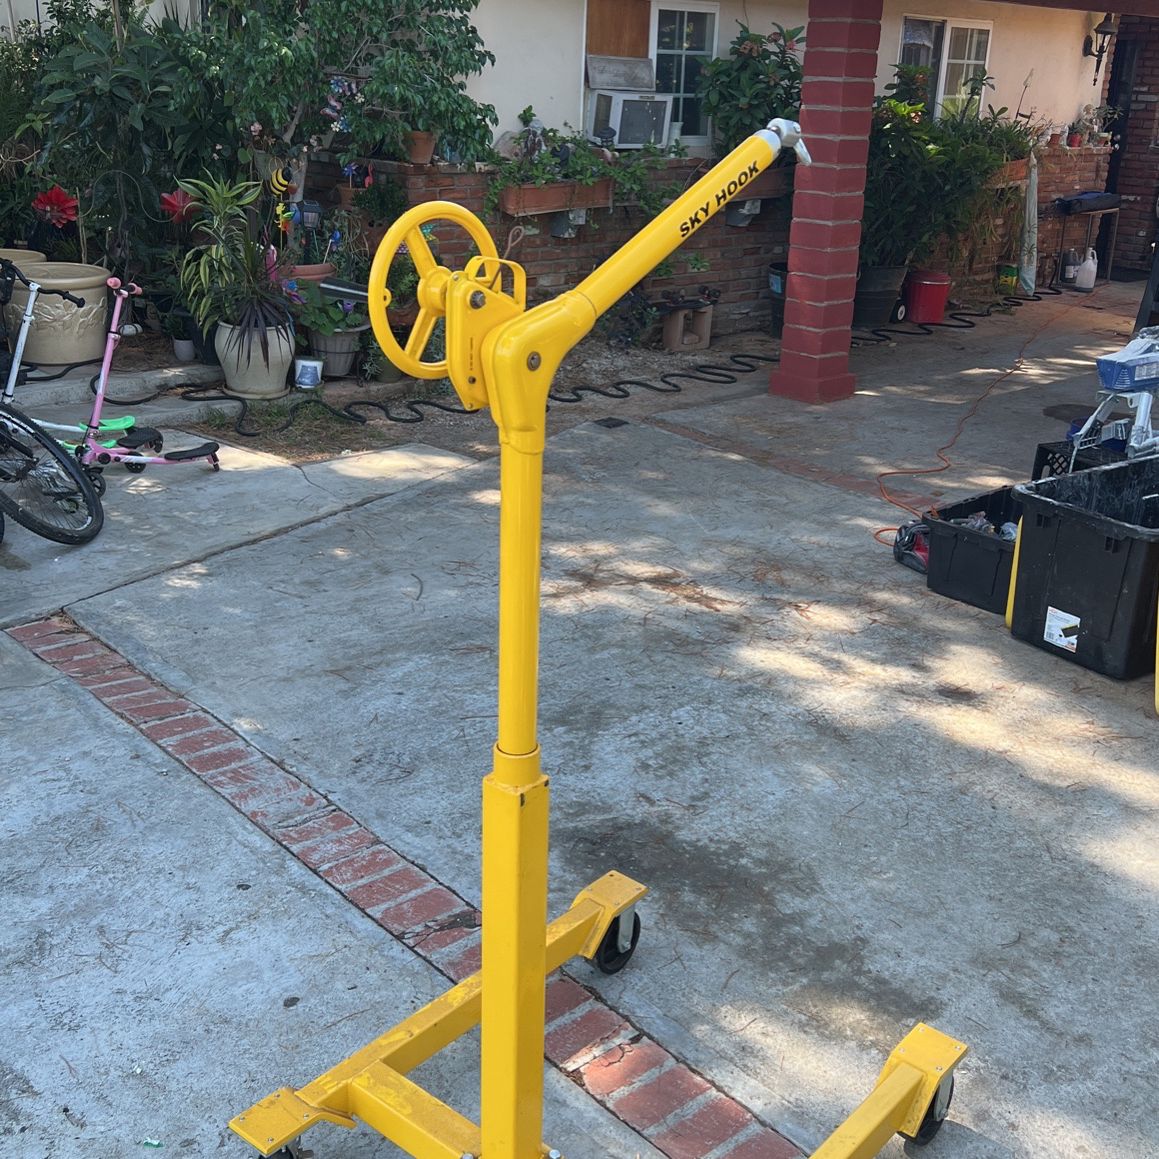 Sky Hook Crane for Sale in Riverside, CA - OfferUp